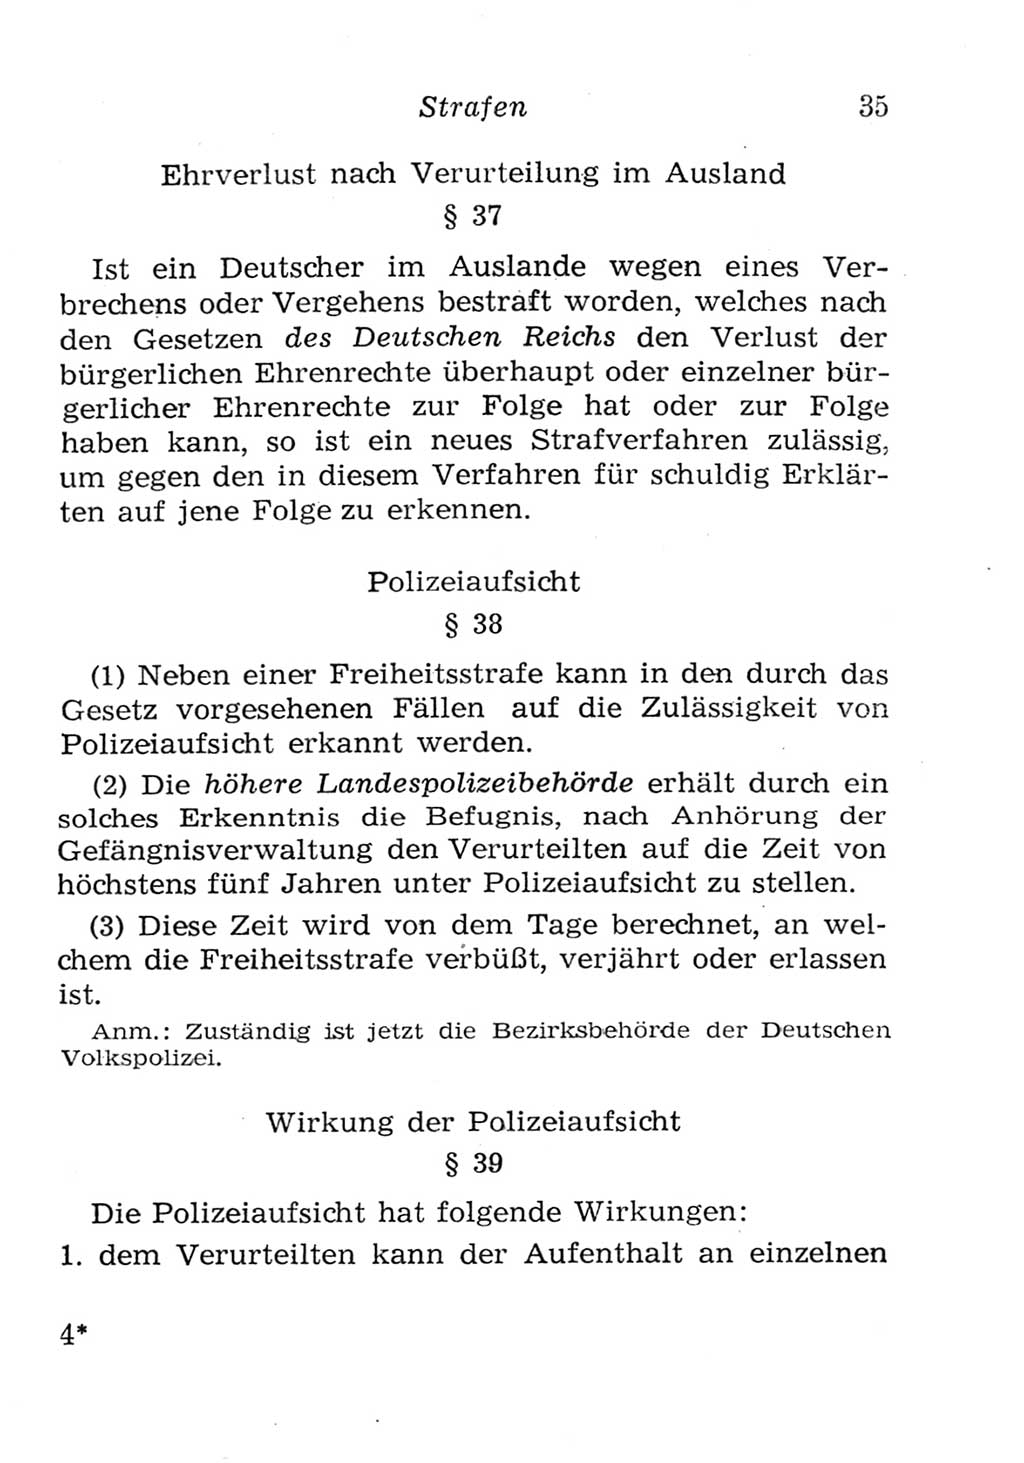 Strafgesetzbuch (StGB) und andere Strafgesetze [Deutsche Demokratische Republik (DDR)] 1957, Seite 35 (StGB Strafges. DDR 1957, S. 35)